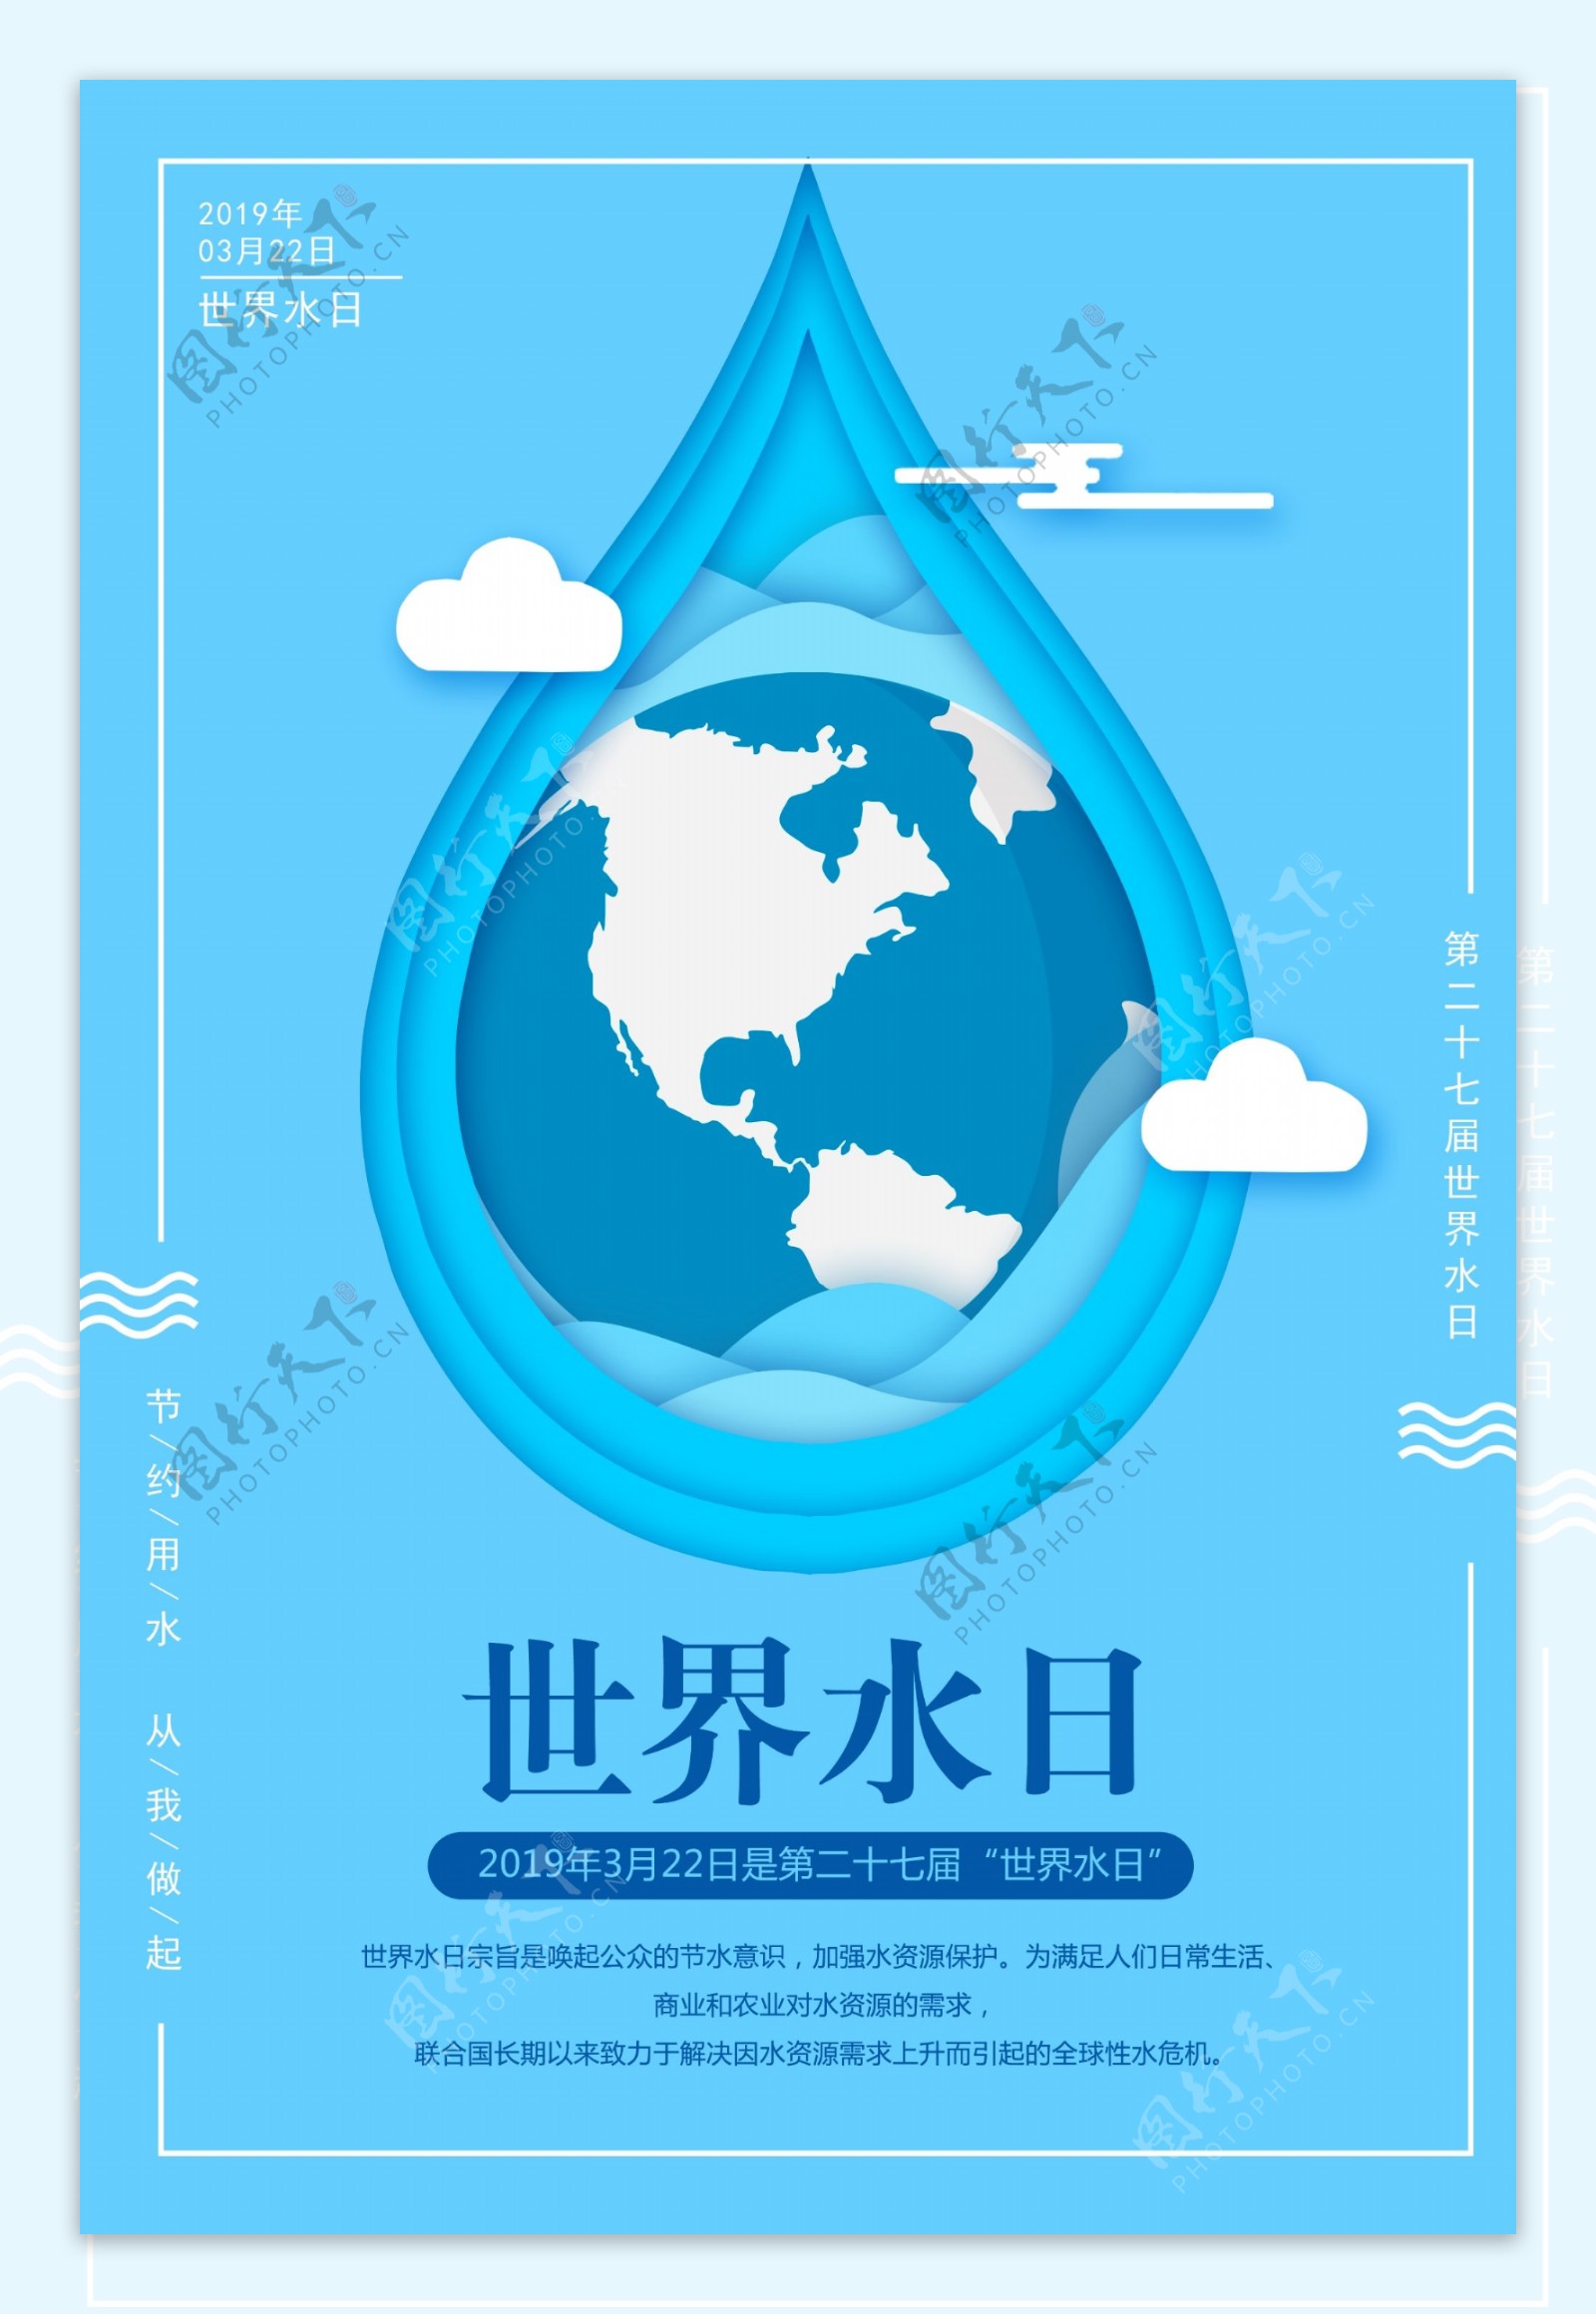 蓝色剪纸风世界水日海报